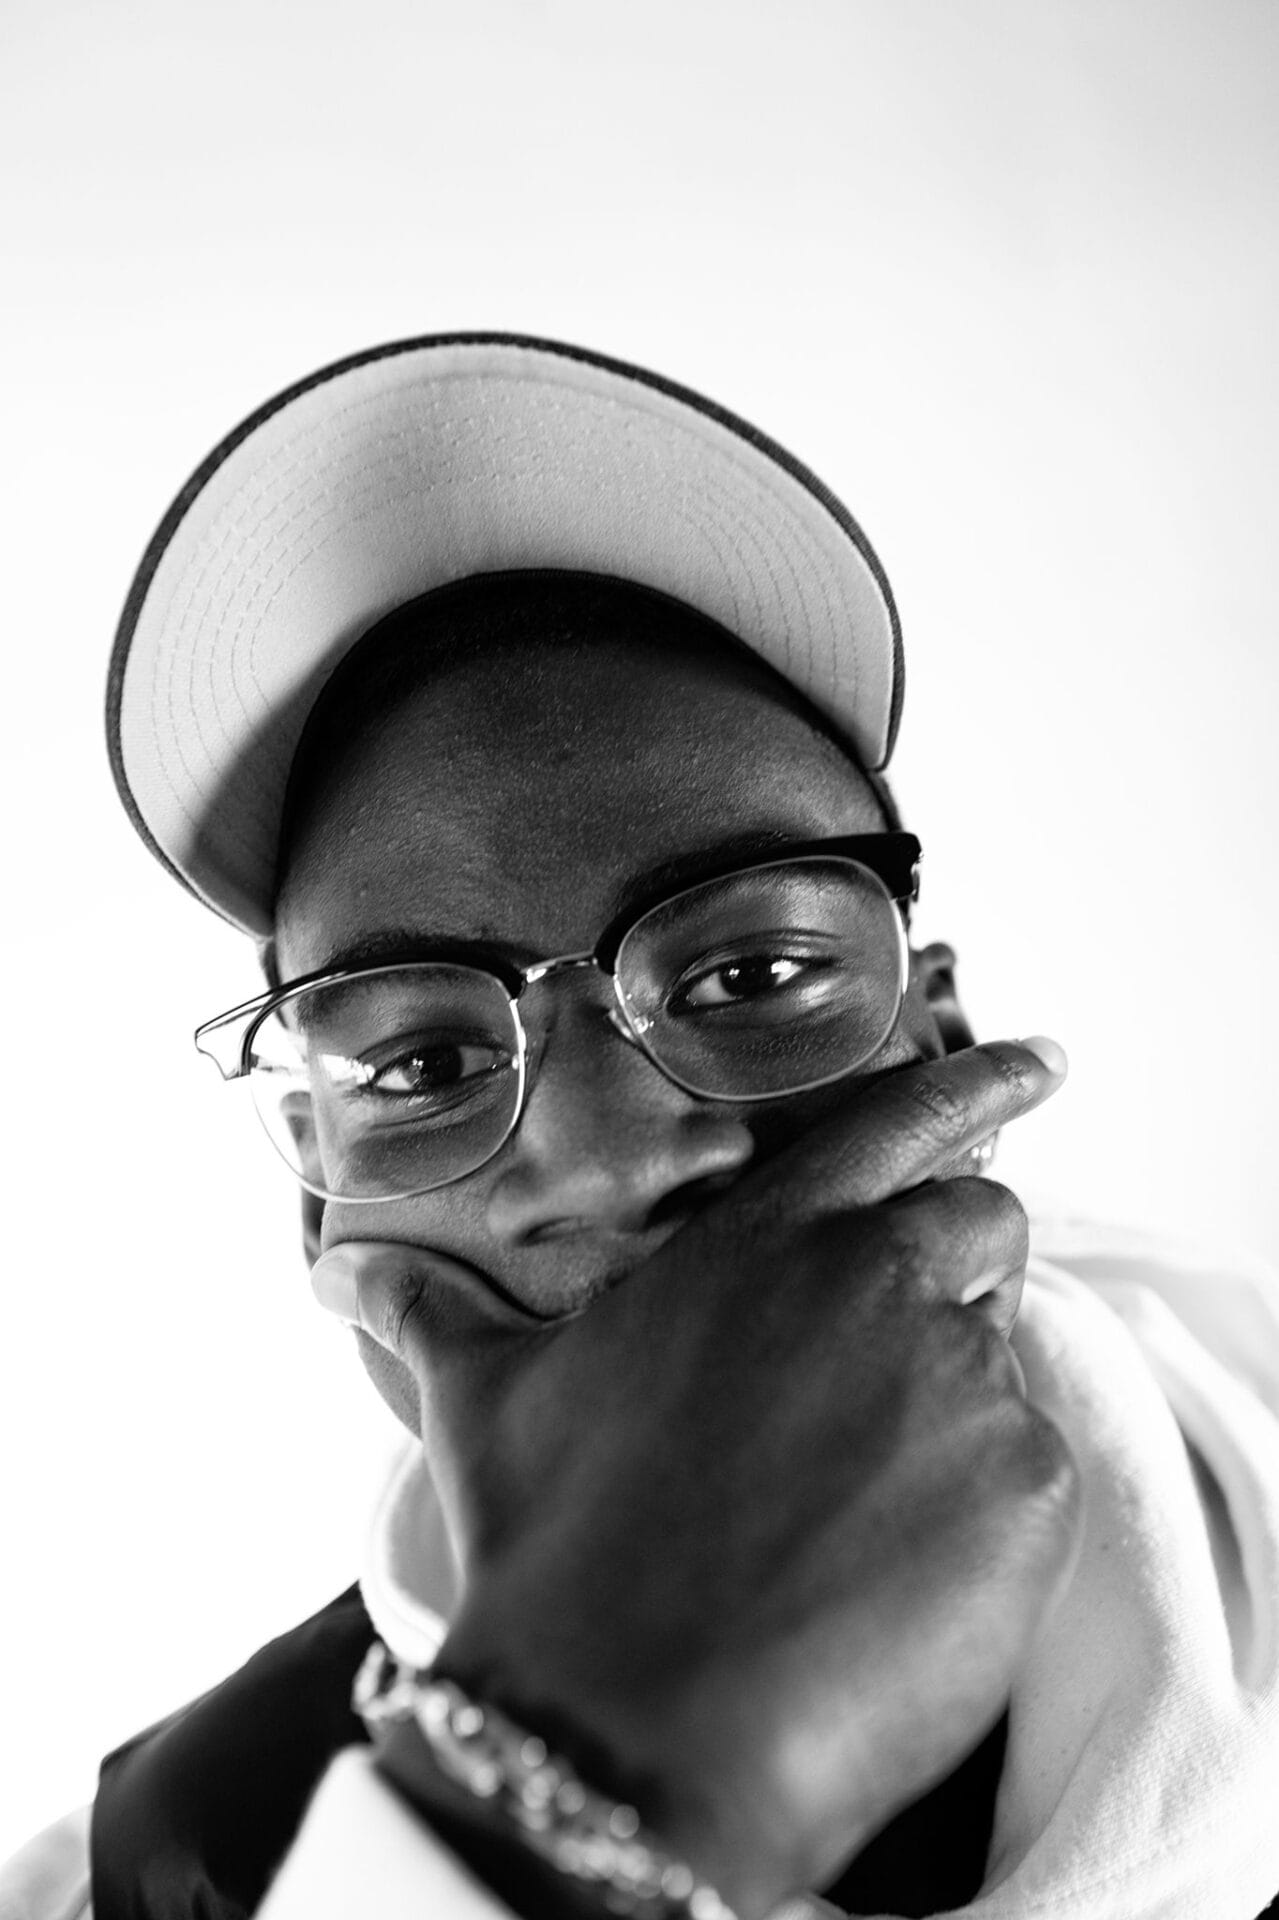 Schwarz-Weiß Portrait einer lässigen, jungen Person mit Brille und Cap.